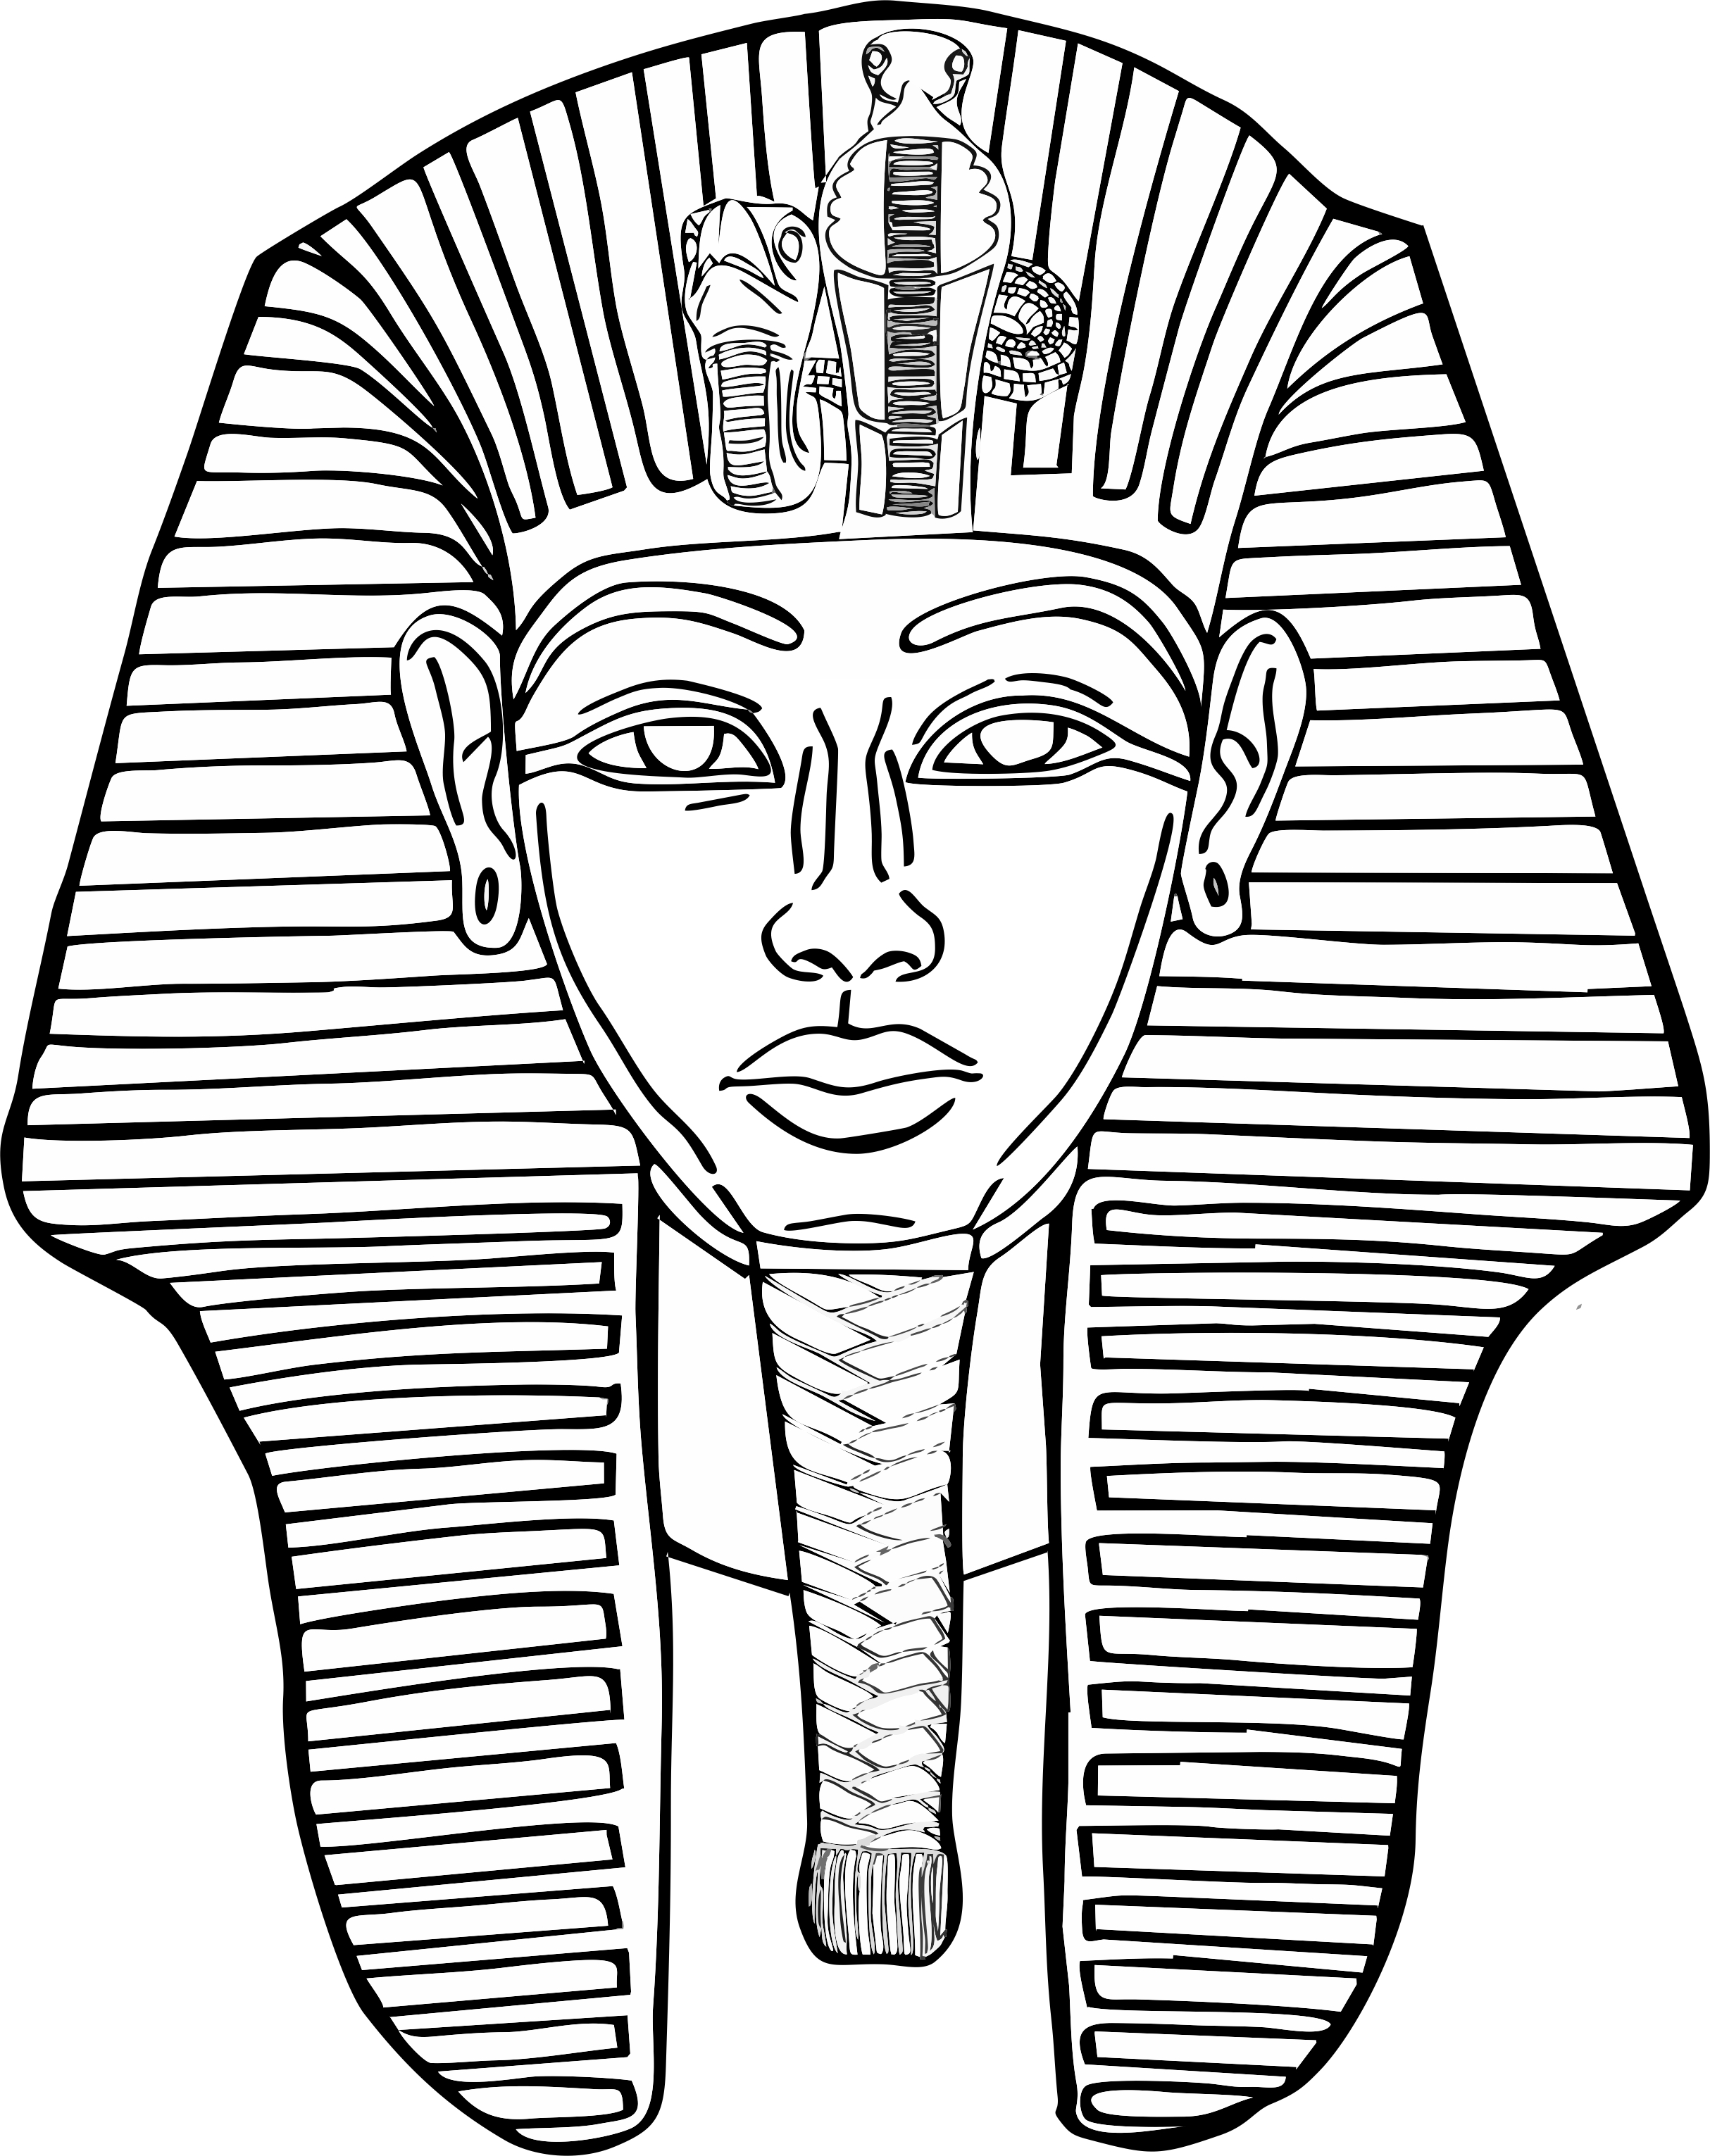 Эскиз маска фараона. Маска фараона Тутанхамона. Маска маска Тутанхамона фараона. Фараон Египет раскраска Тутанхамон. Фараон Египта Тутанхамон эскиз.